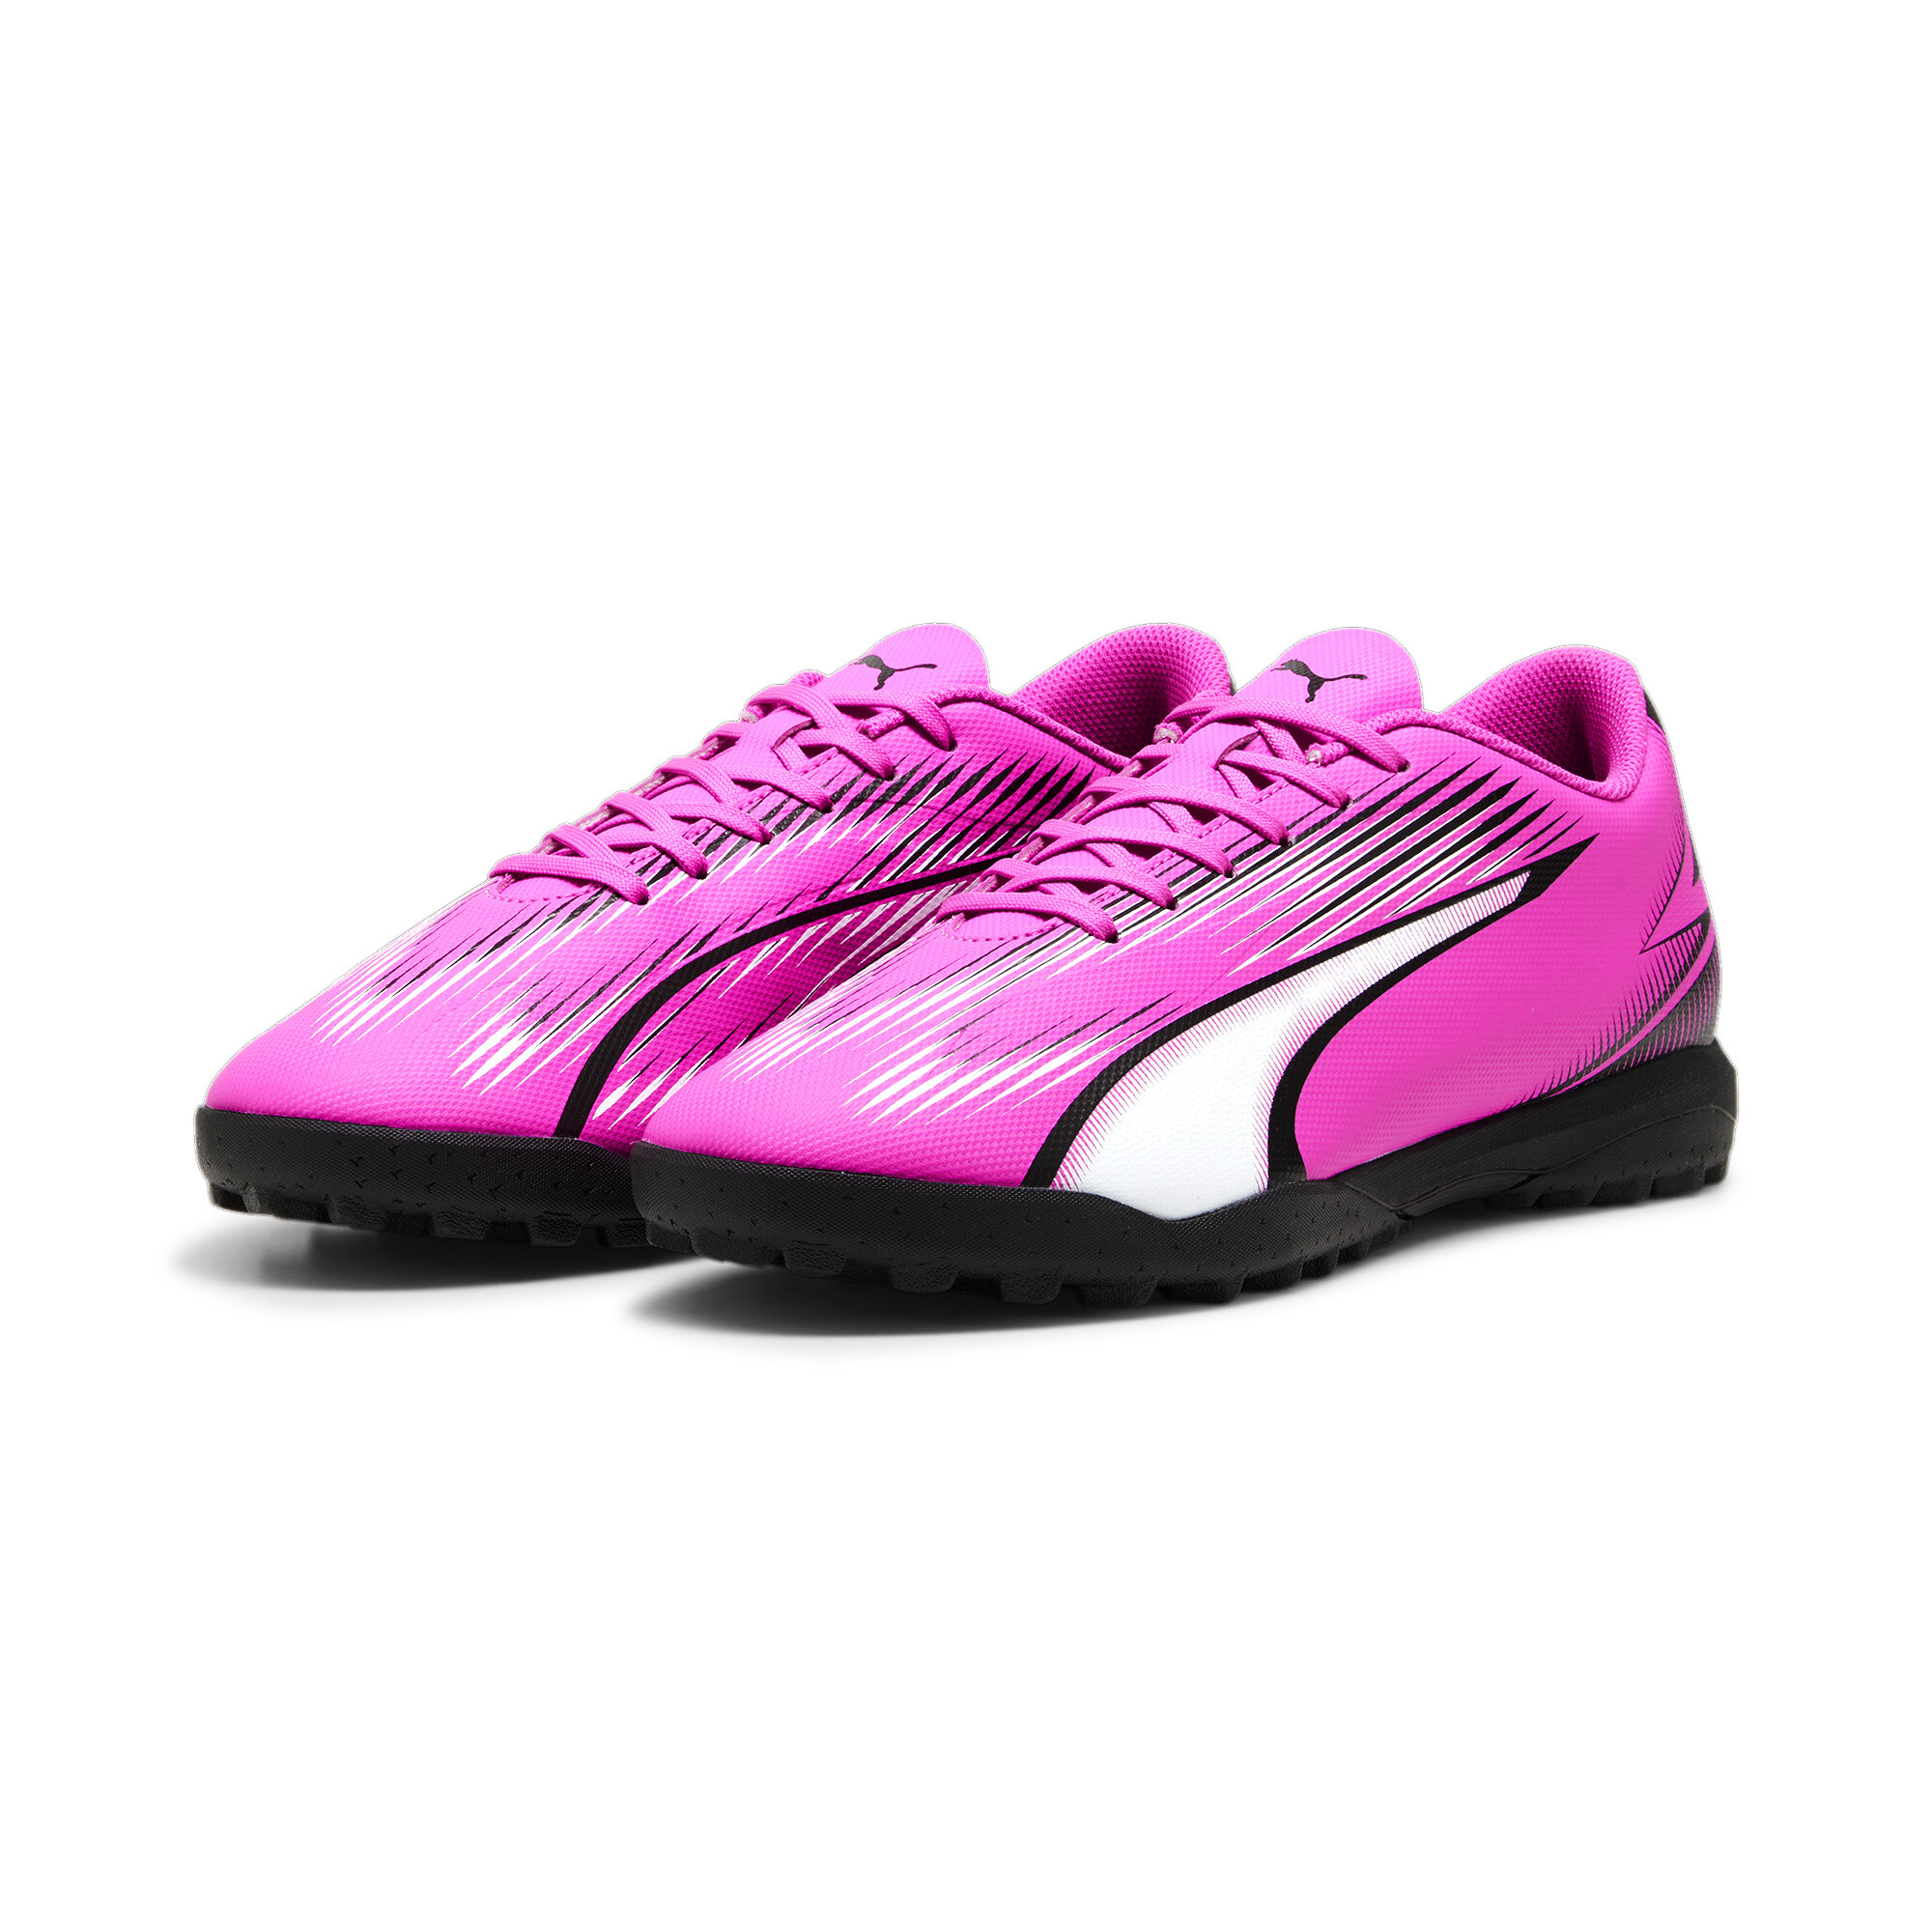 Men's PUMA ULTRA PLAY TT Football Boots In Pink, Size EU 45